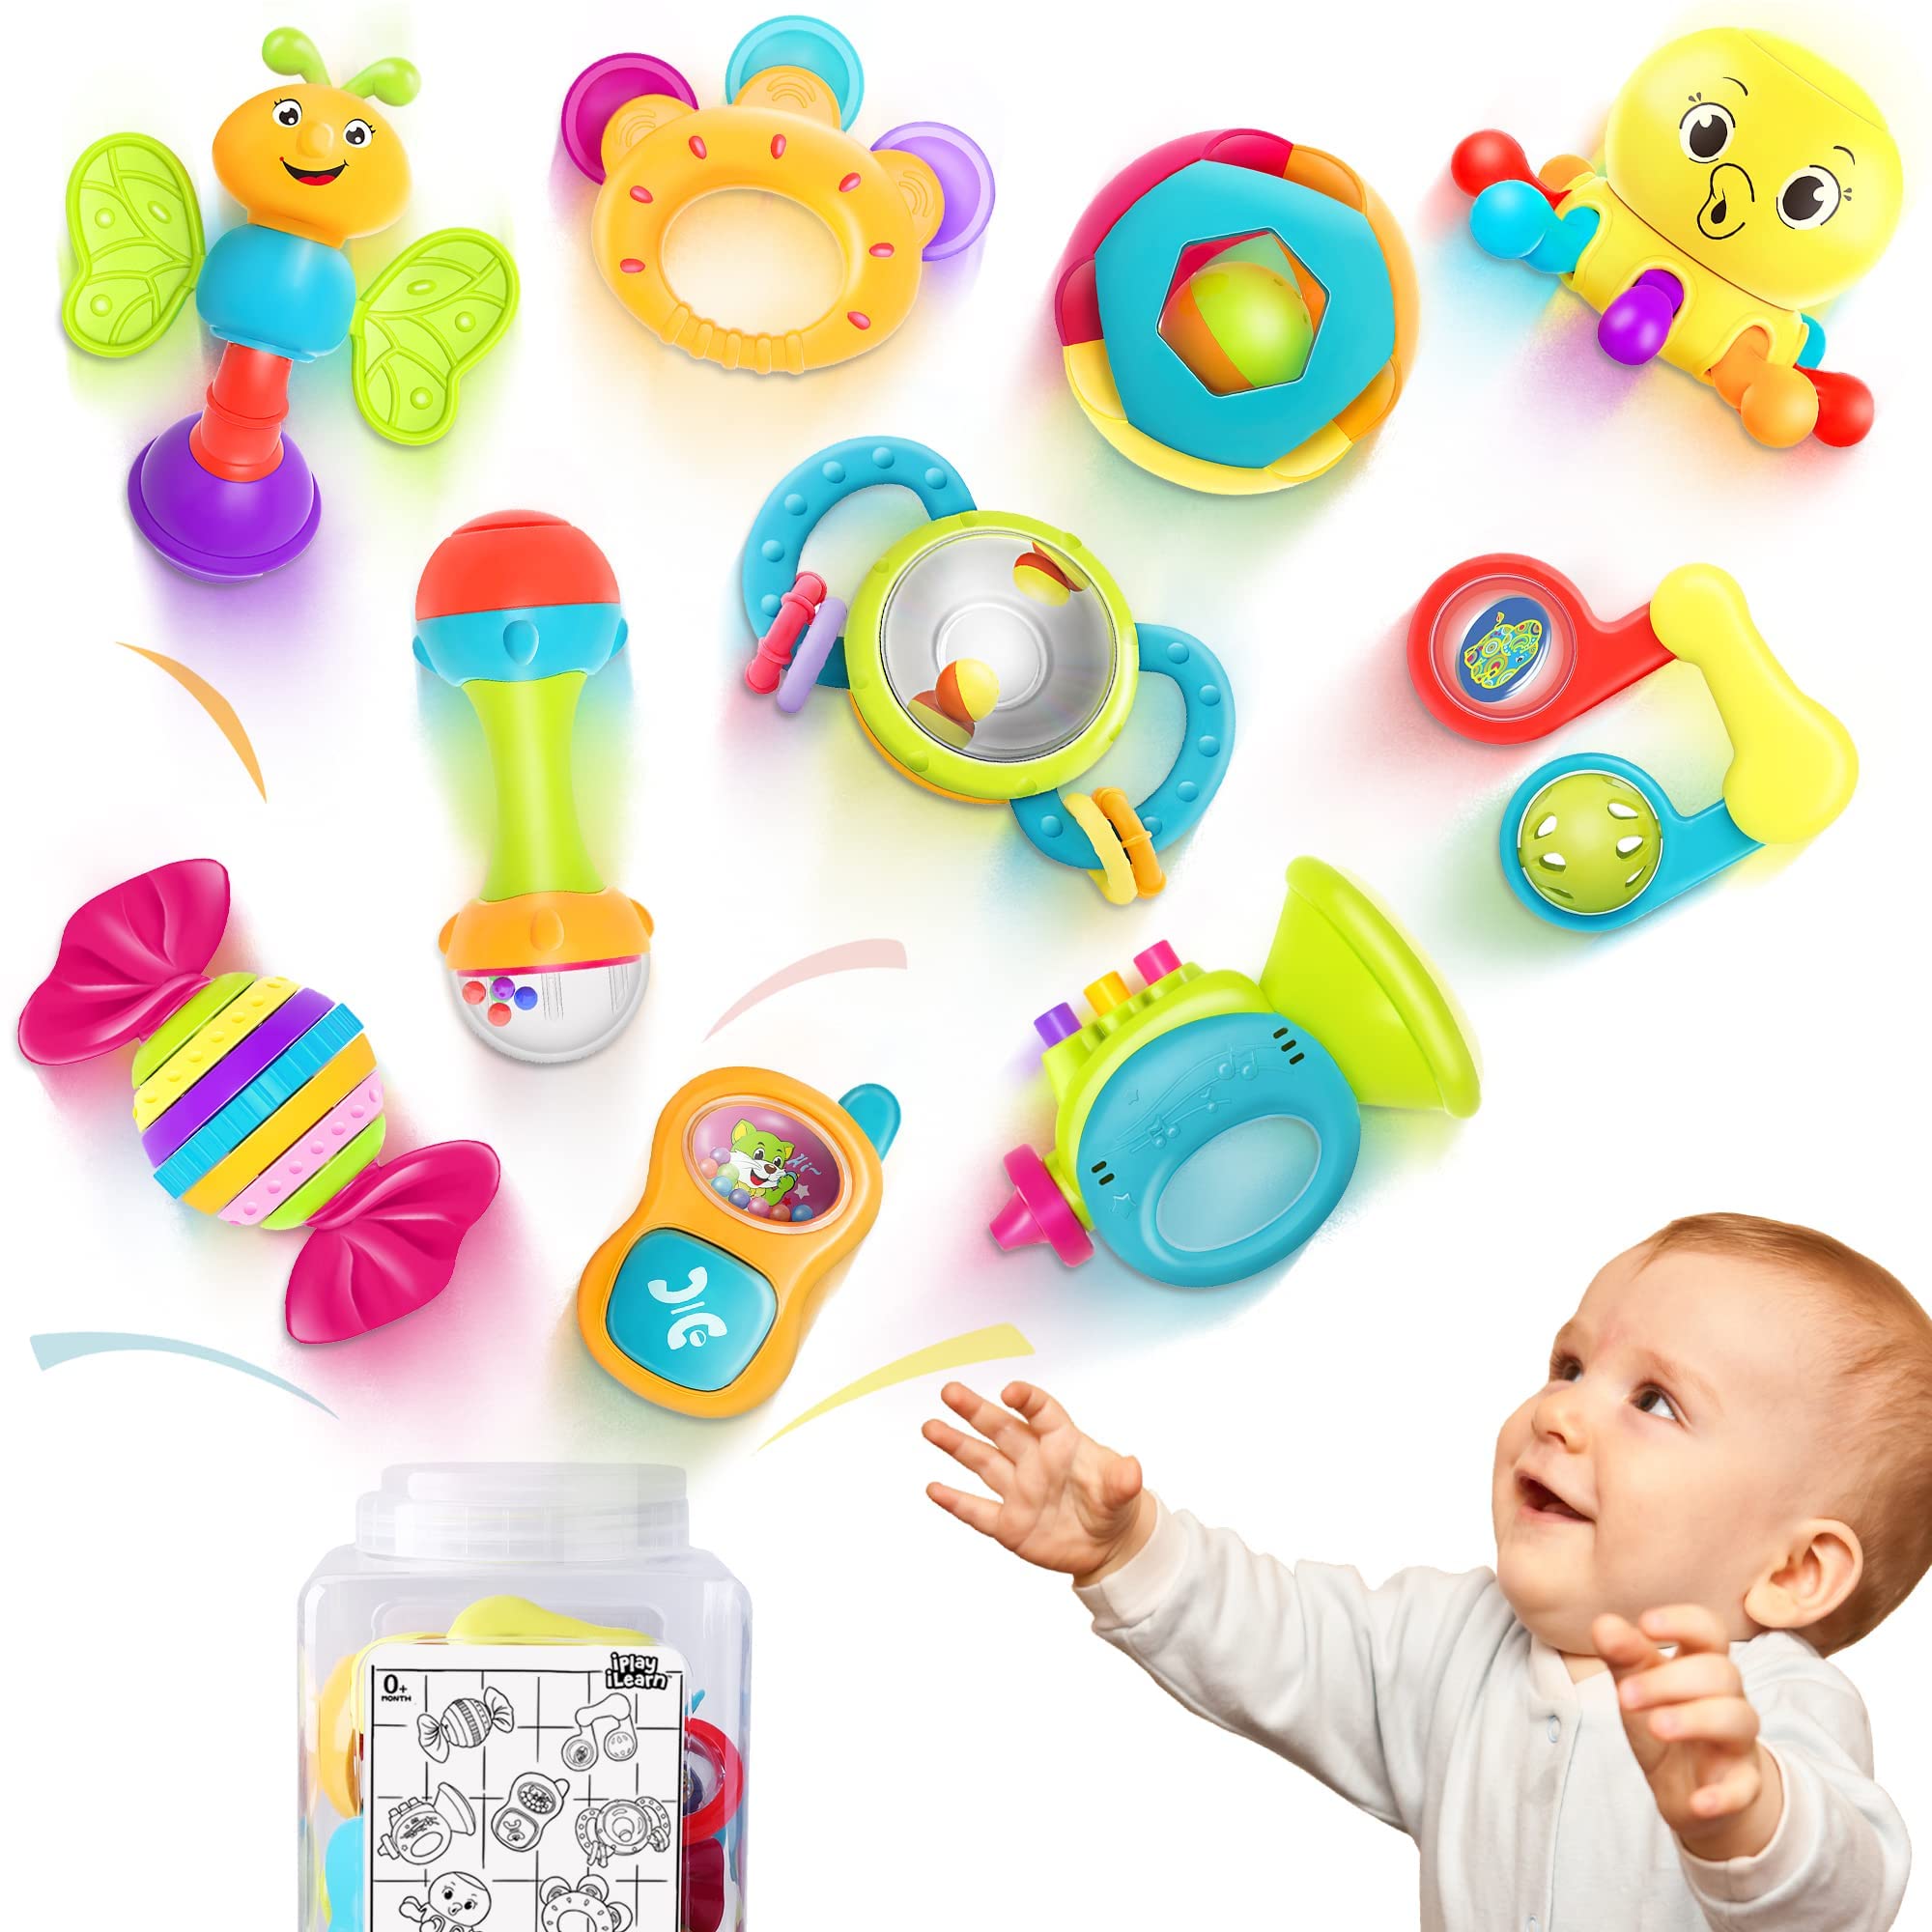 iPlay iLearn 赤ちゃん用 ガラガラ、歯固め、シェーカー、掴んで回すラトル、音の出るおもちゃ10点セット、幼少教育玩具 3、6、 9、 12